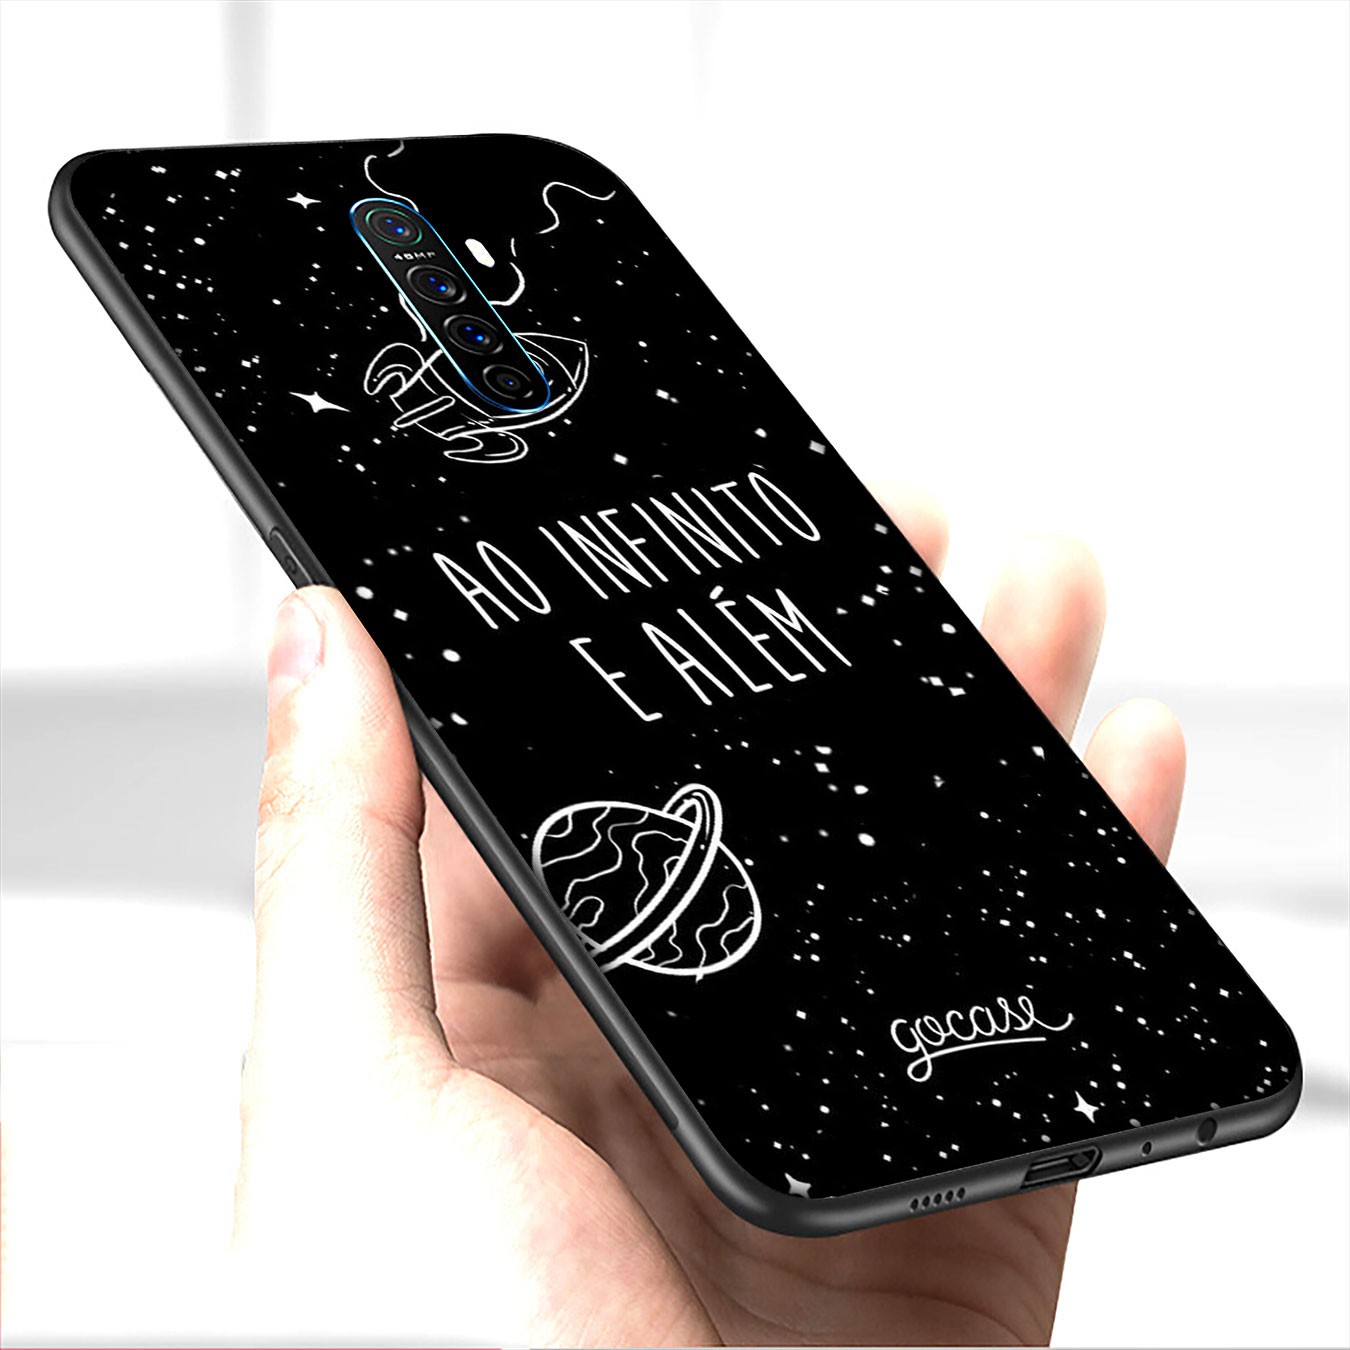 Ốp lưng silicone họa tiết hoạt hình màu đen cho Samsung Galaxy A9 A8 J8 A6 J4 J6 Prime Plus 2018 A21S Core J7 Duo